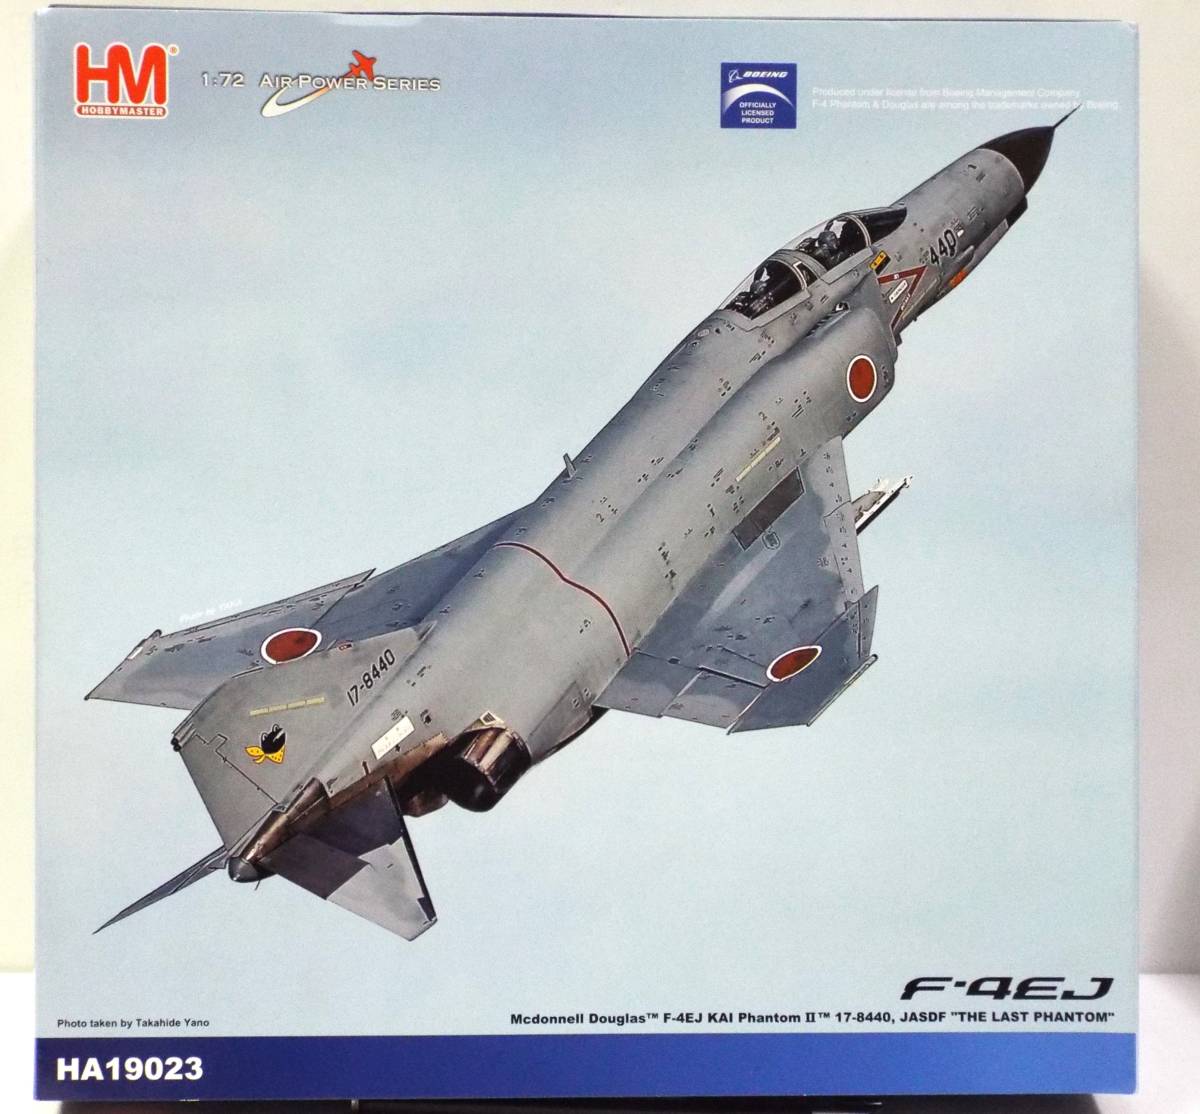 【HM】1/72 マクダネル ダグラス 航空自衛隊 RF-4EJ改 ファントムⅡ'第301飛行隊 17-8440'の (商品№ HA19023)ダイキャスト製完成機_専用パッケージ入り。